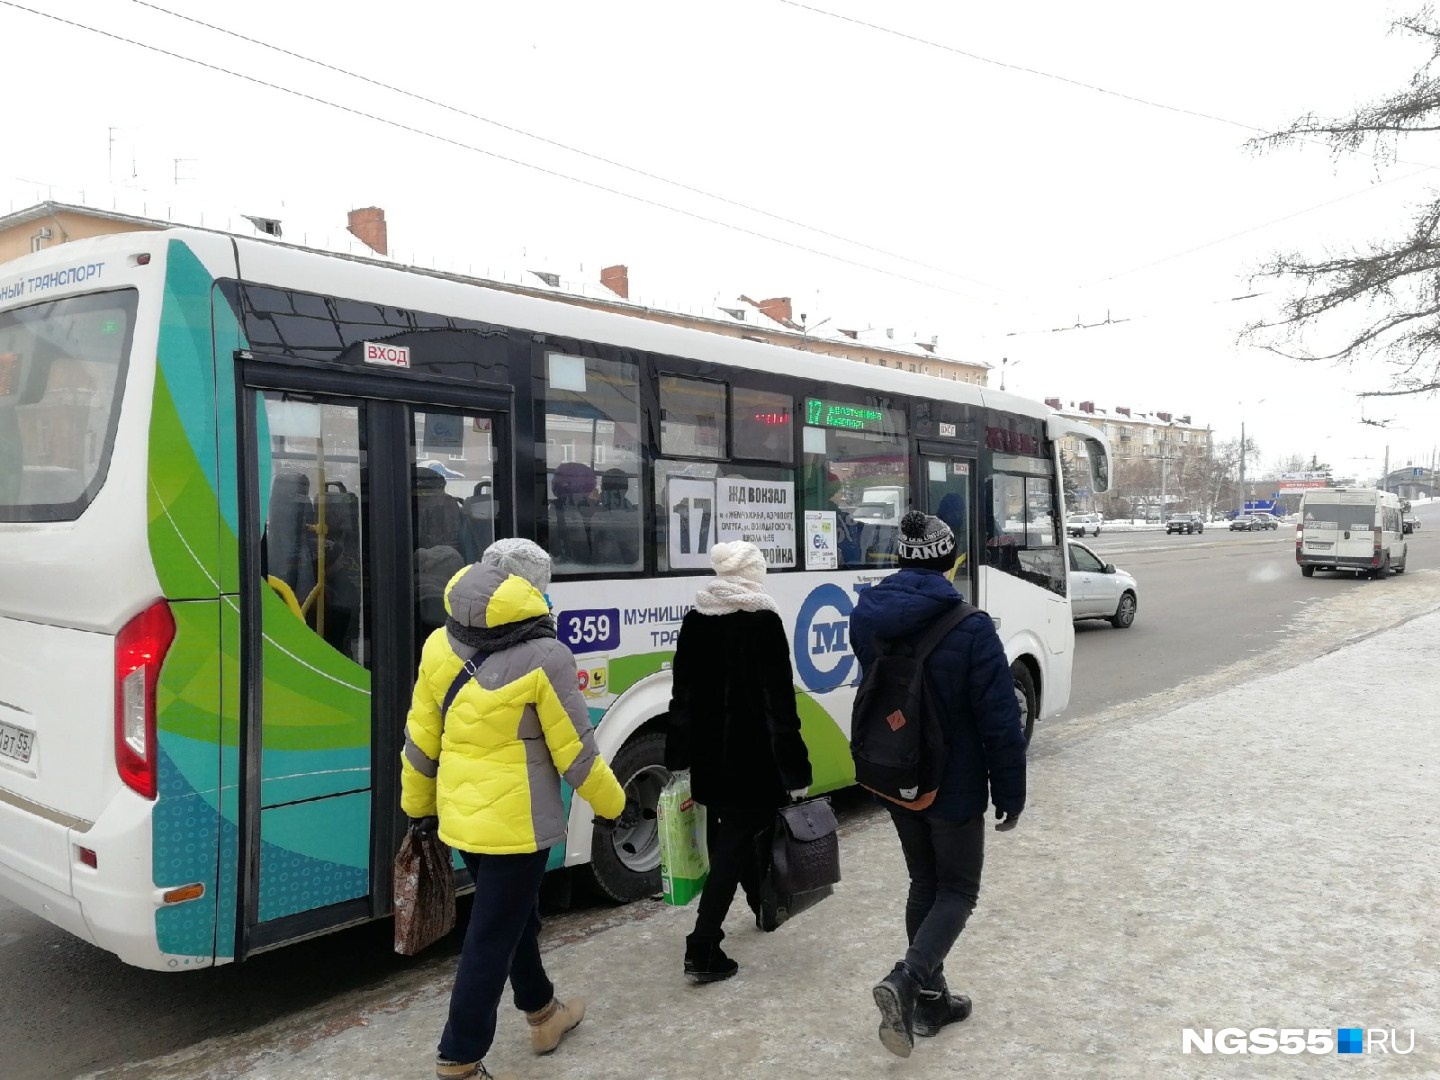 В середине нерабочей недели в Омске все-таки решили увеличить число автобусов